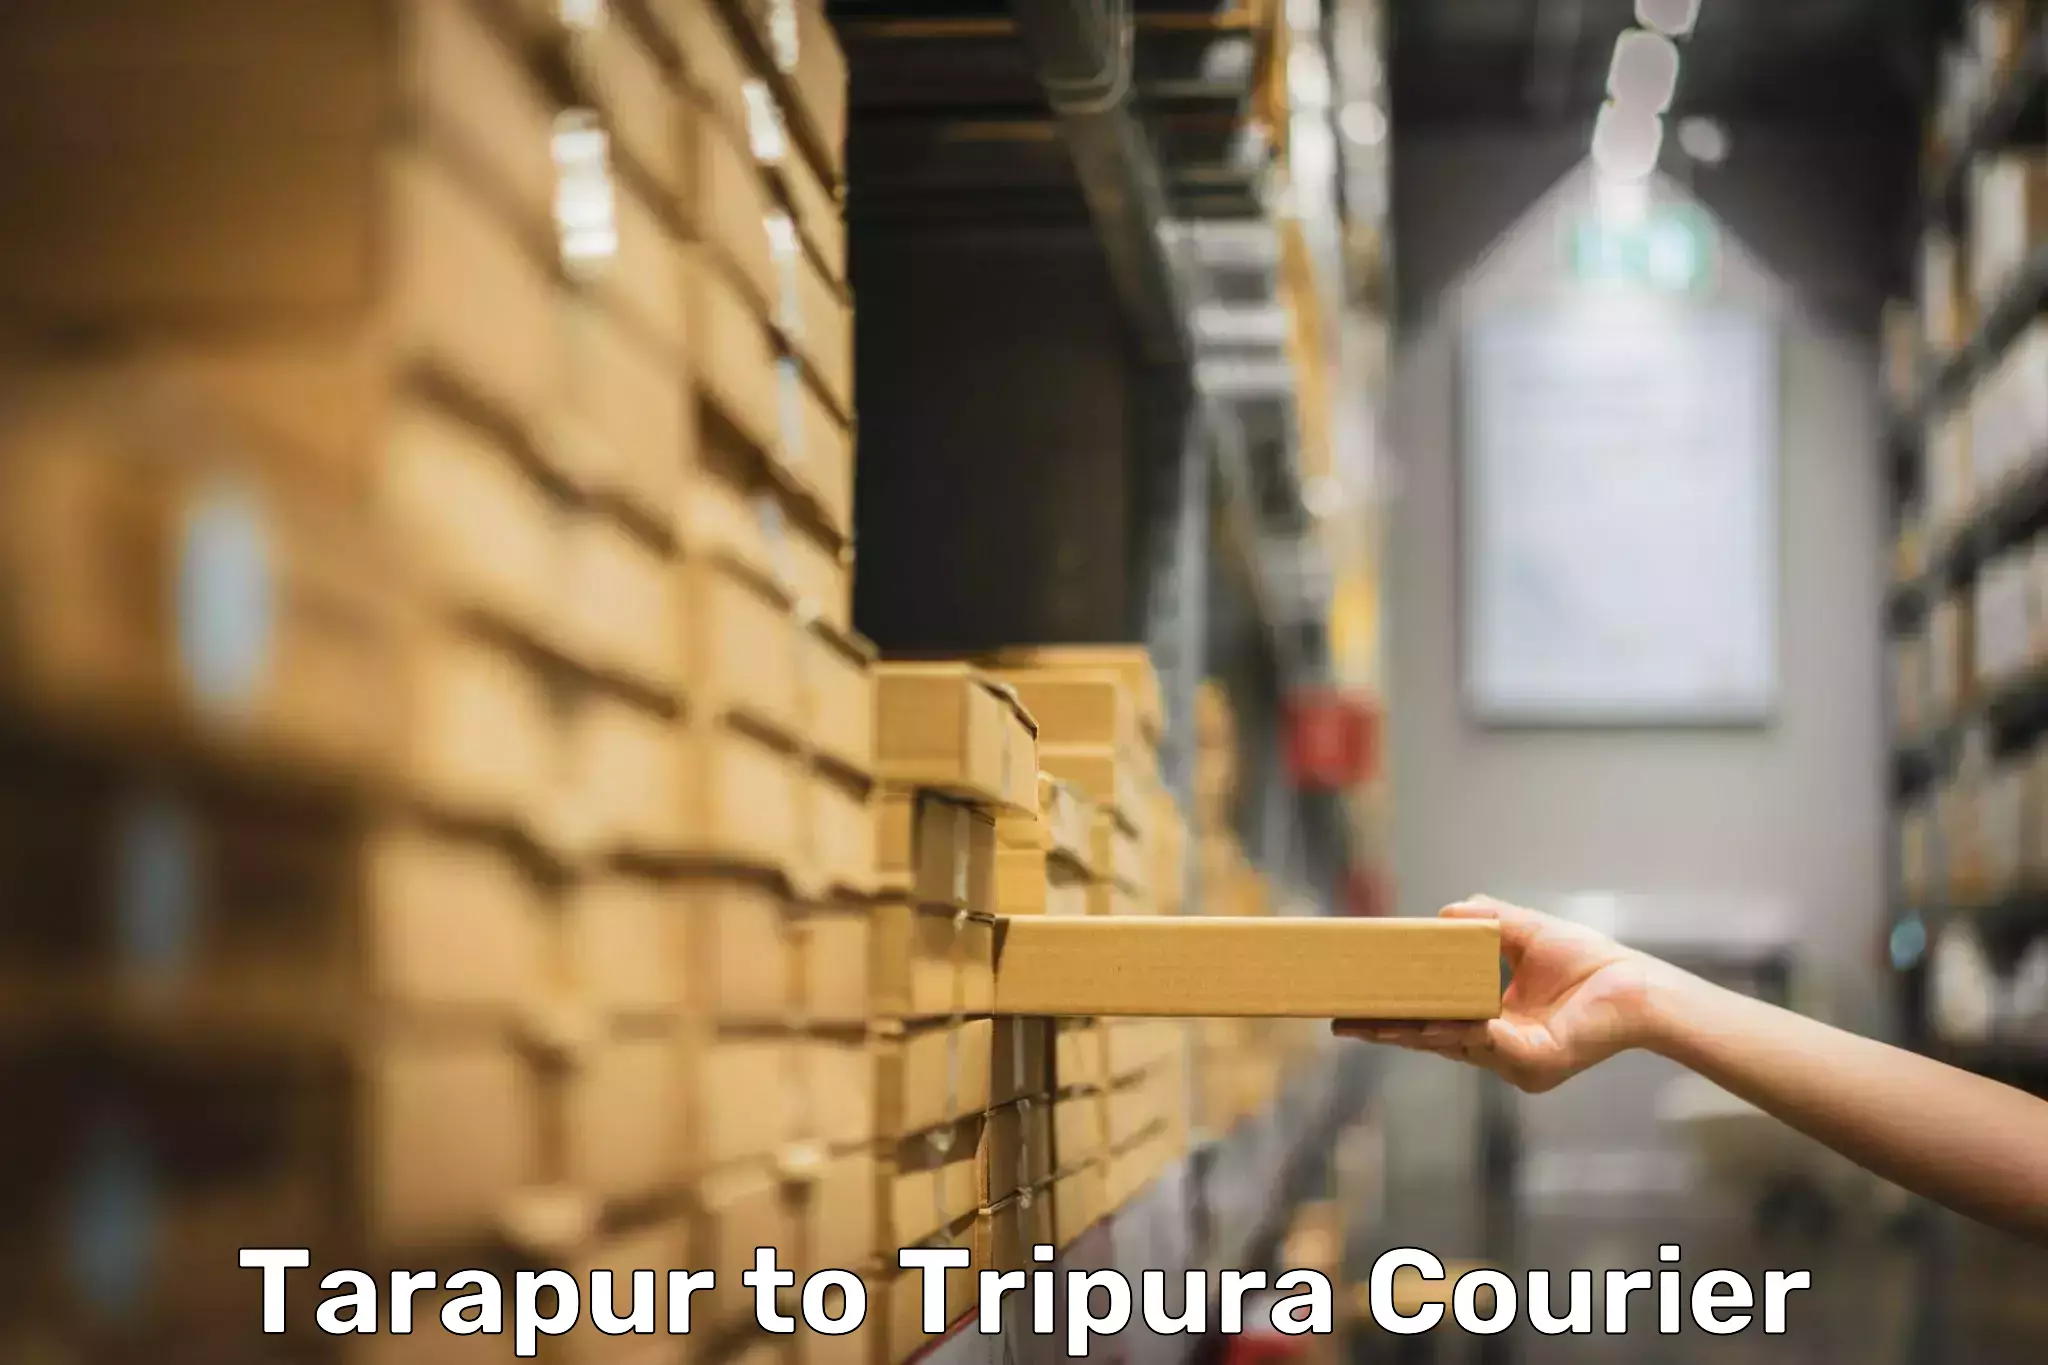 Luggage transport consultancy Tarapur to Tripura